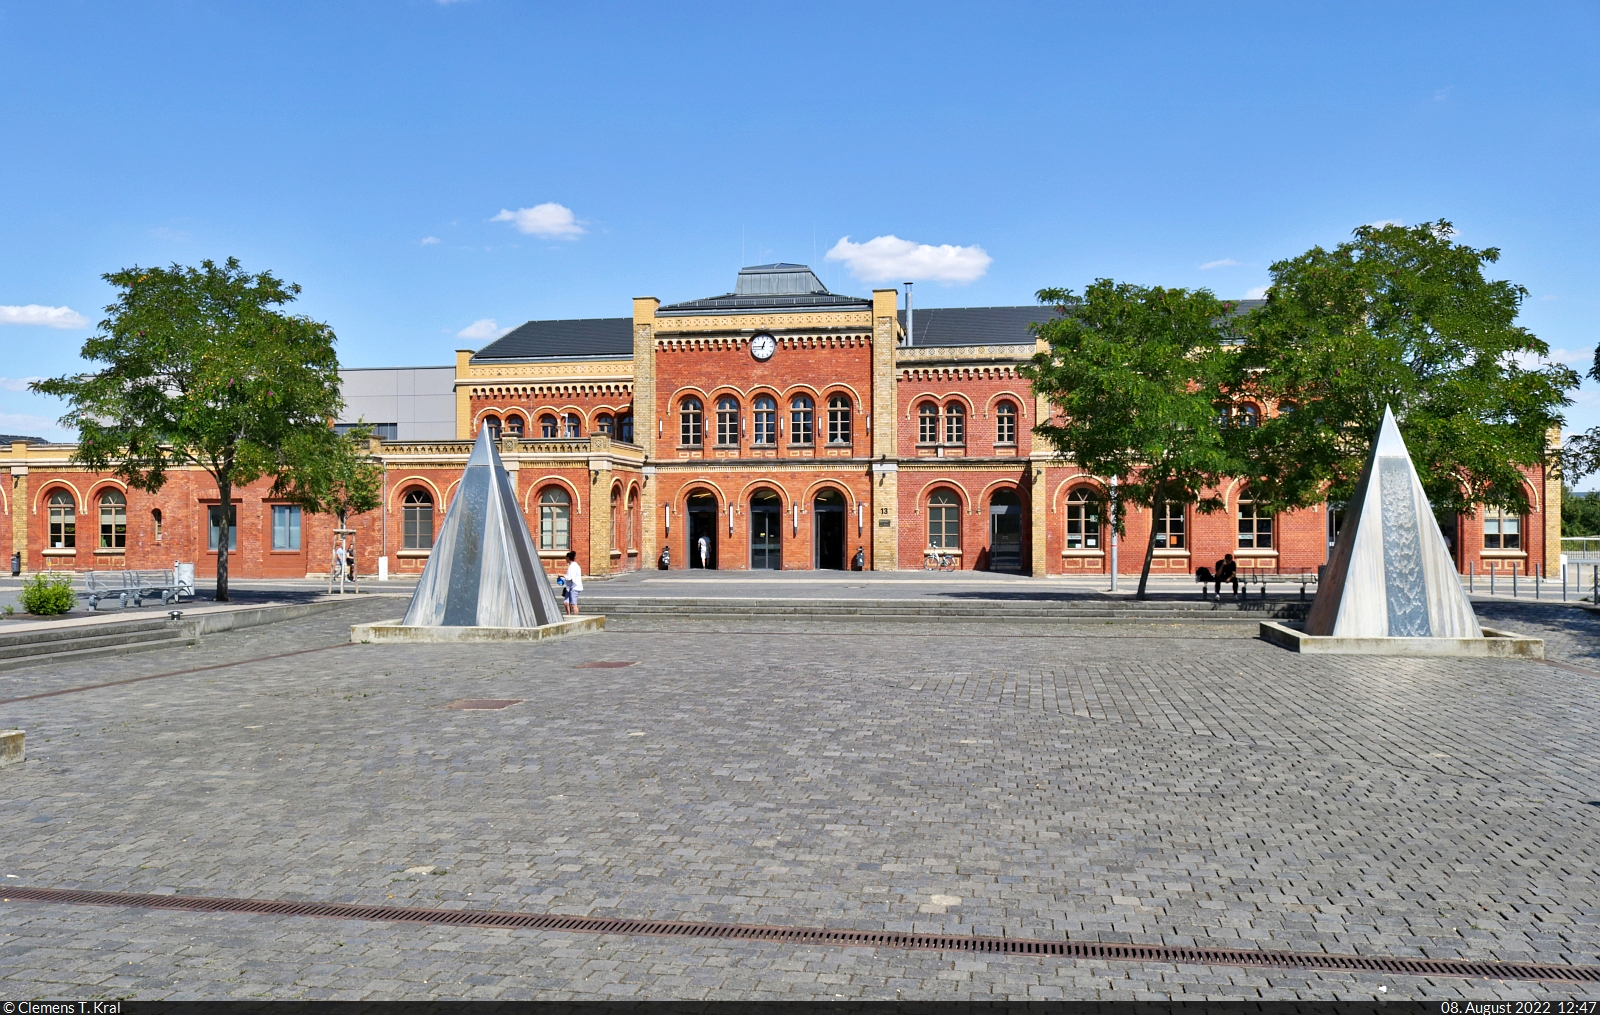 Das Empfangsgebäude des Bahnhofs Halberstadt von 1868 steht unter Denkmalschutz und präsentiert sich seit der Sanierung von 2008 bis 2010 sehr ansehnlich. 2014 errang der Bahnhof den Titel  Kulturbahnhof .

🕓 8.8.2022 | 12:47 Uhr